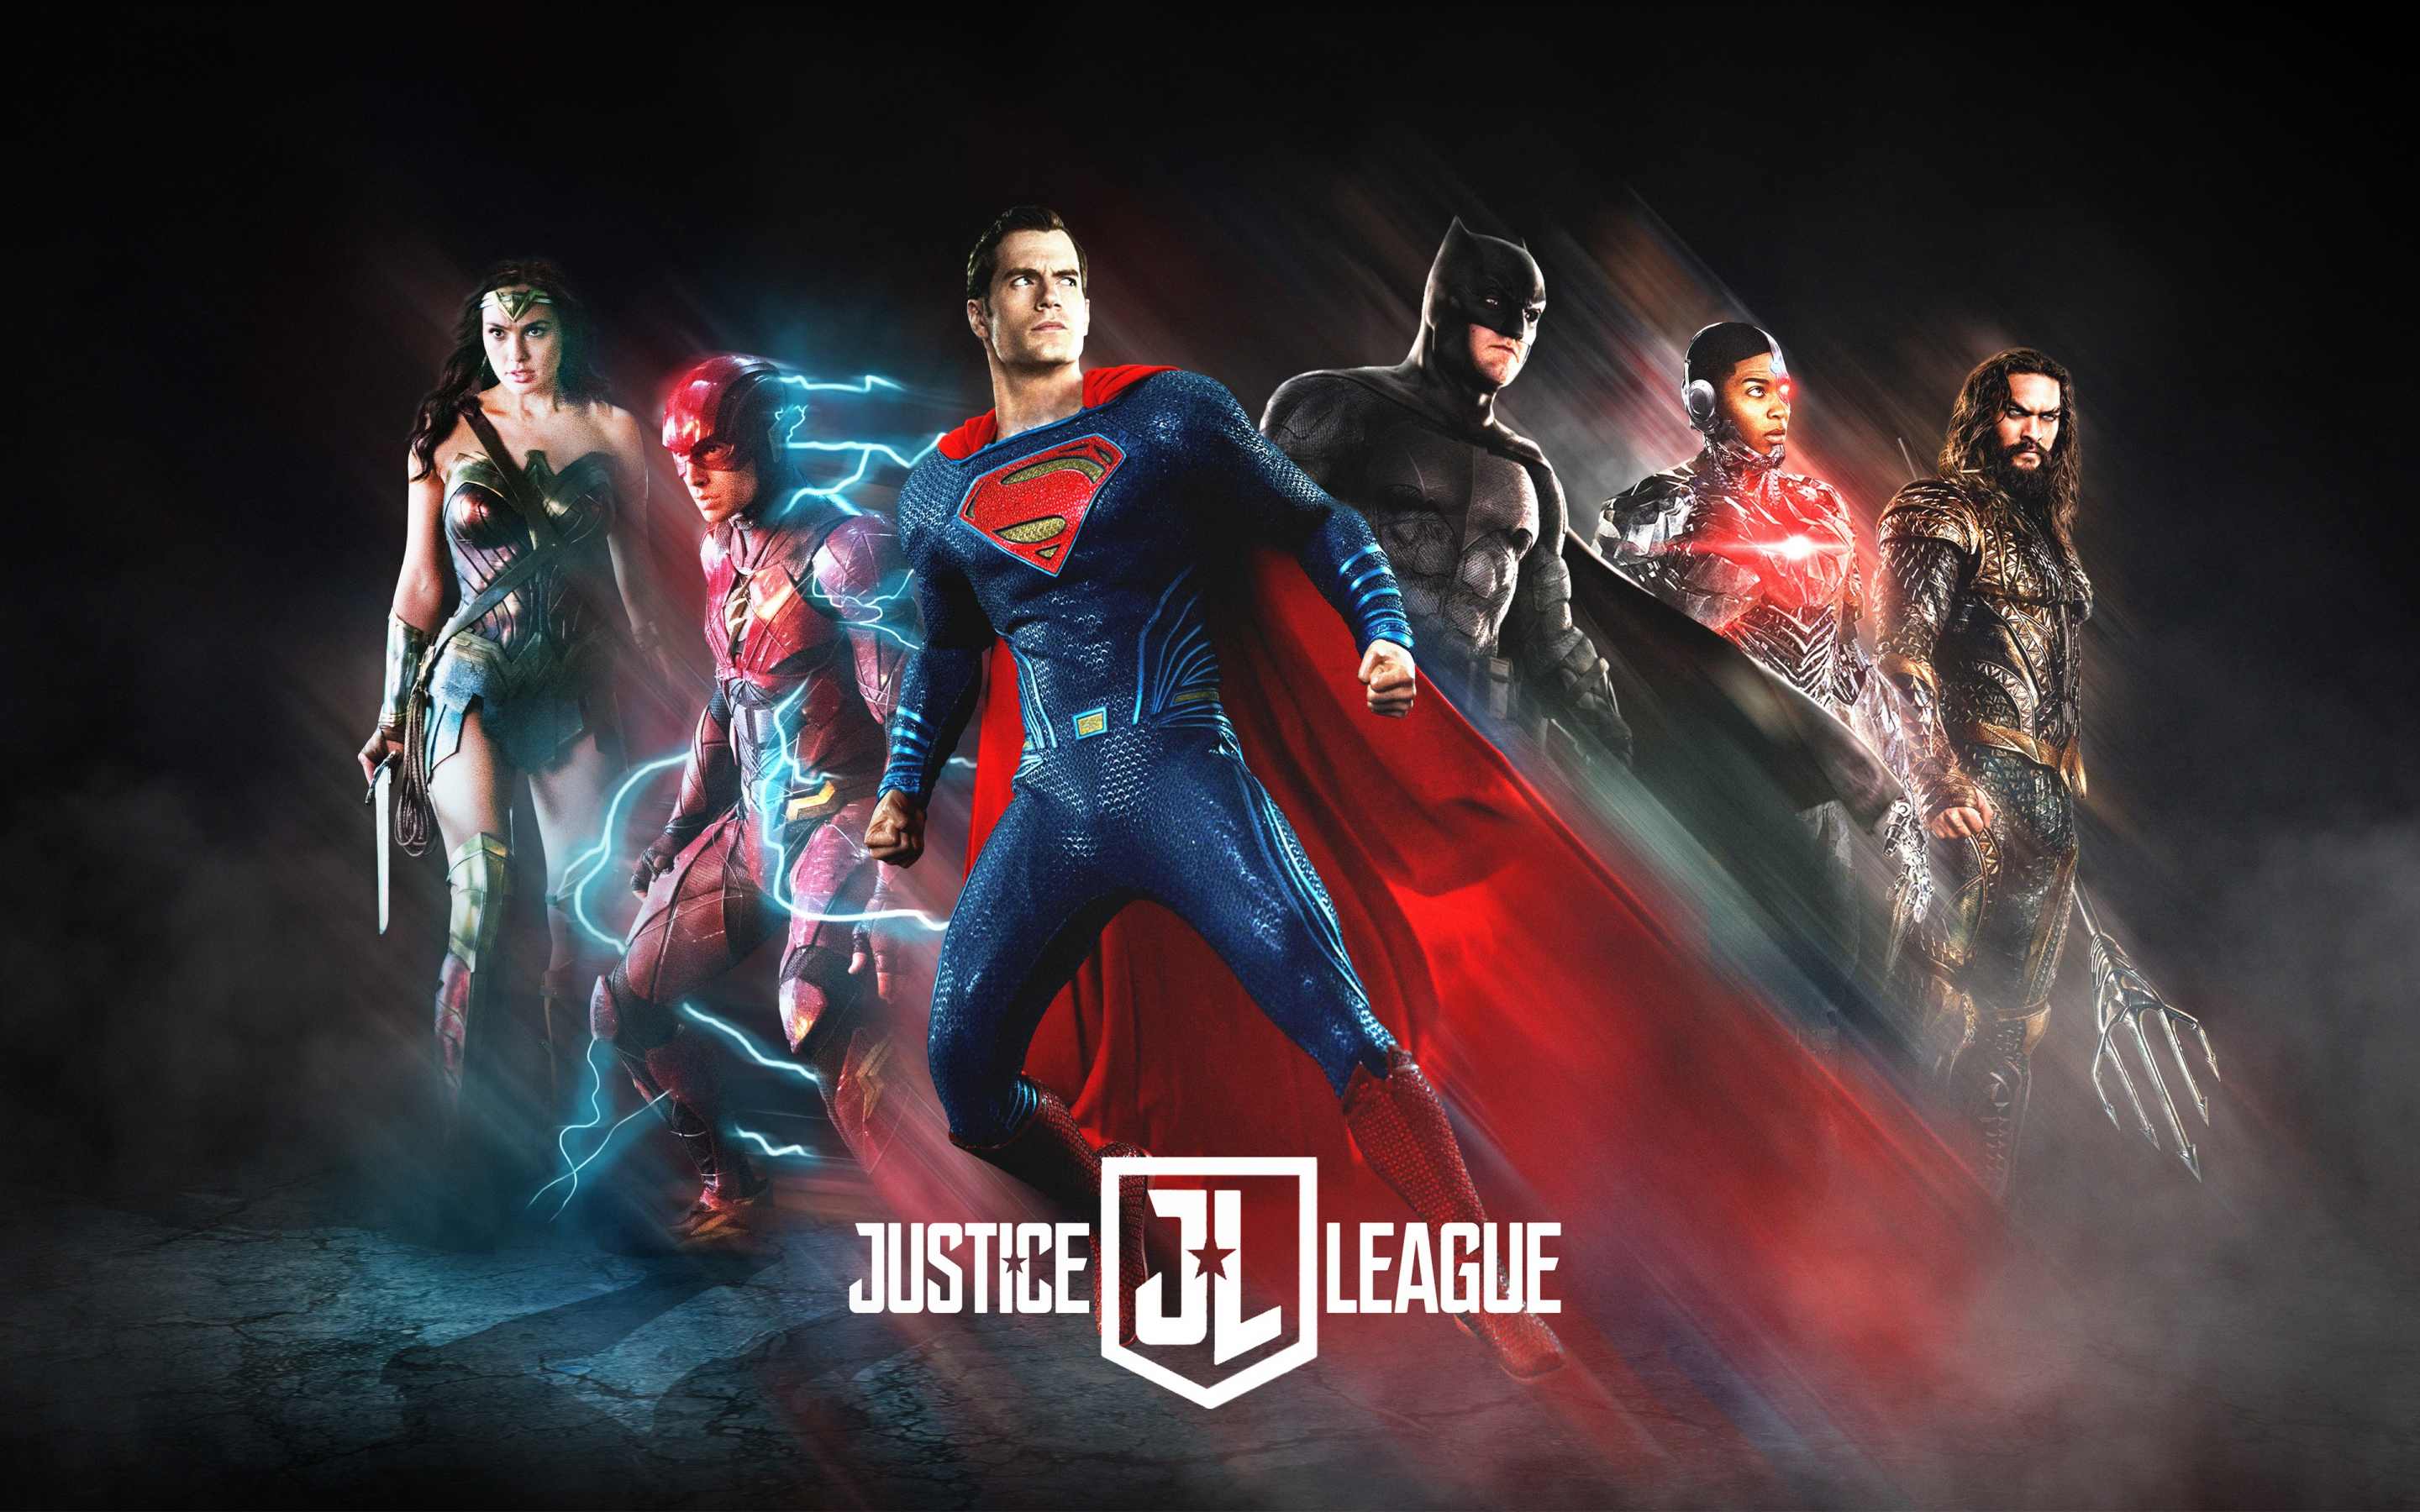 Justice league, fan art, movie, poster, 2880x1800 wallpaper